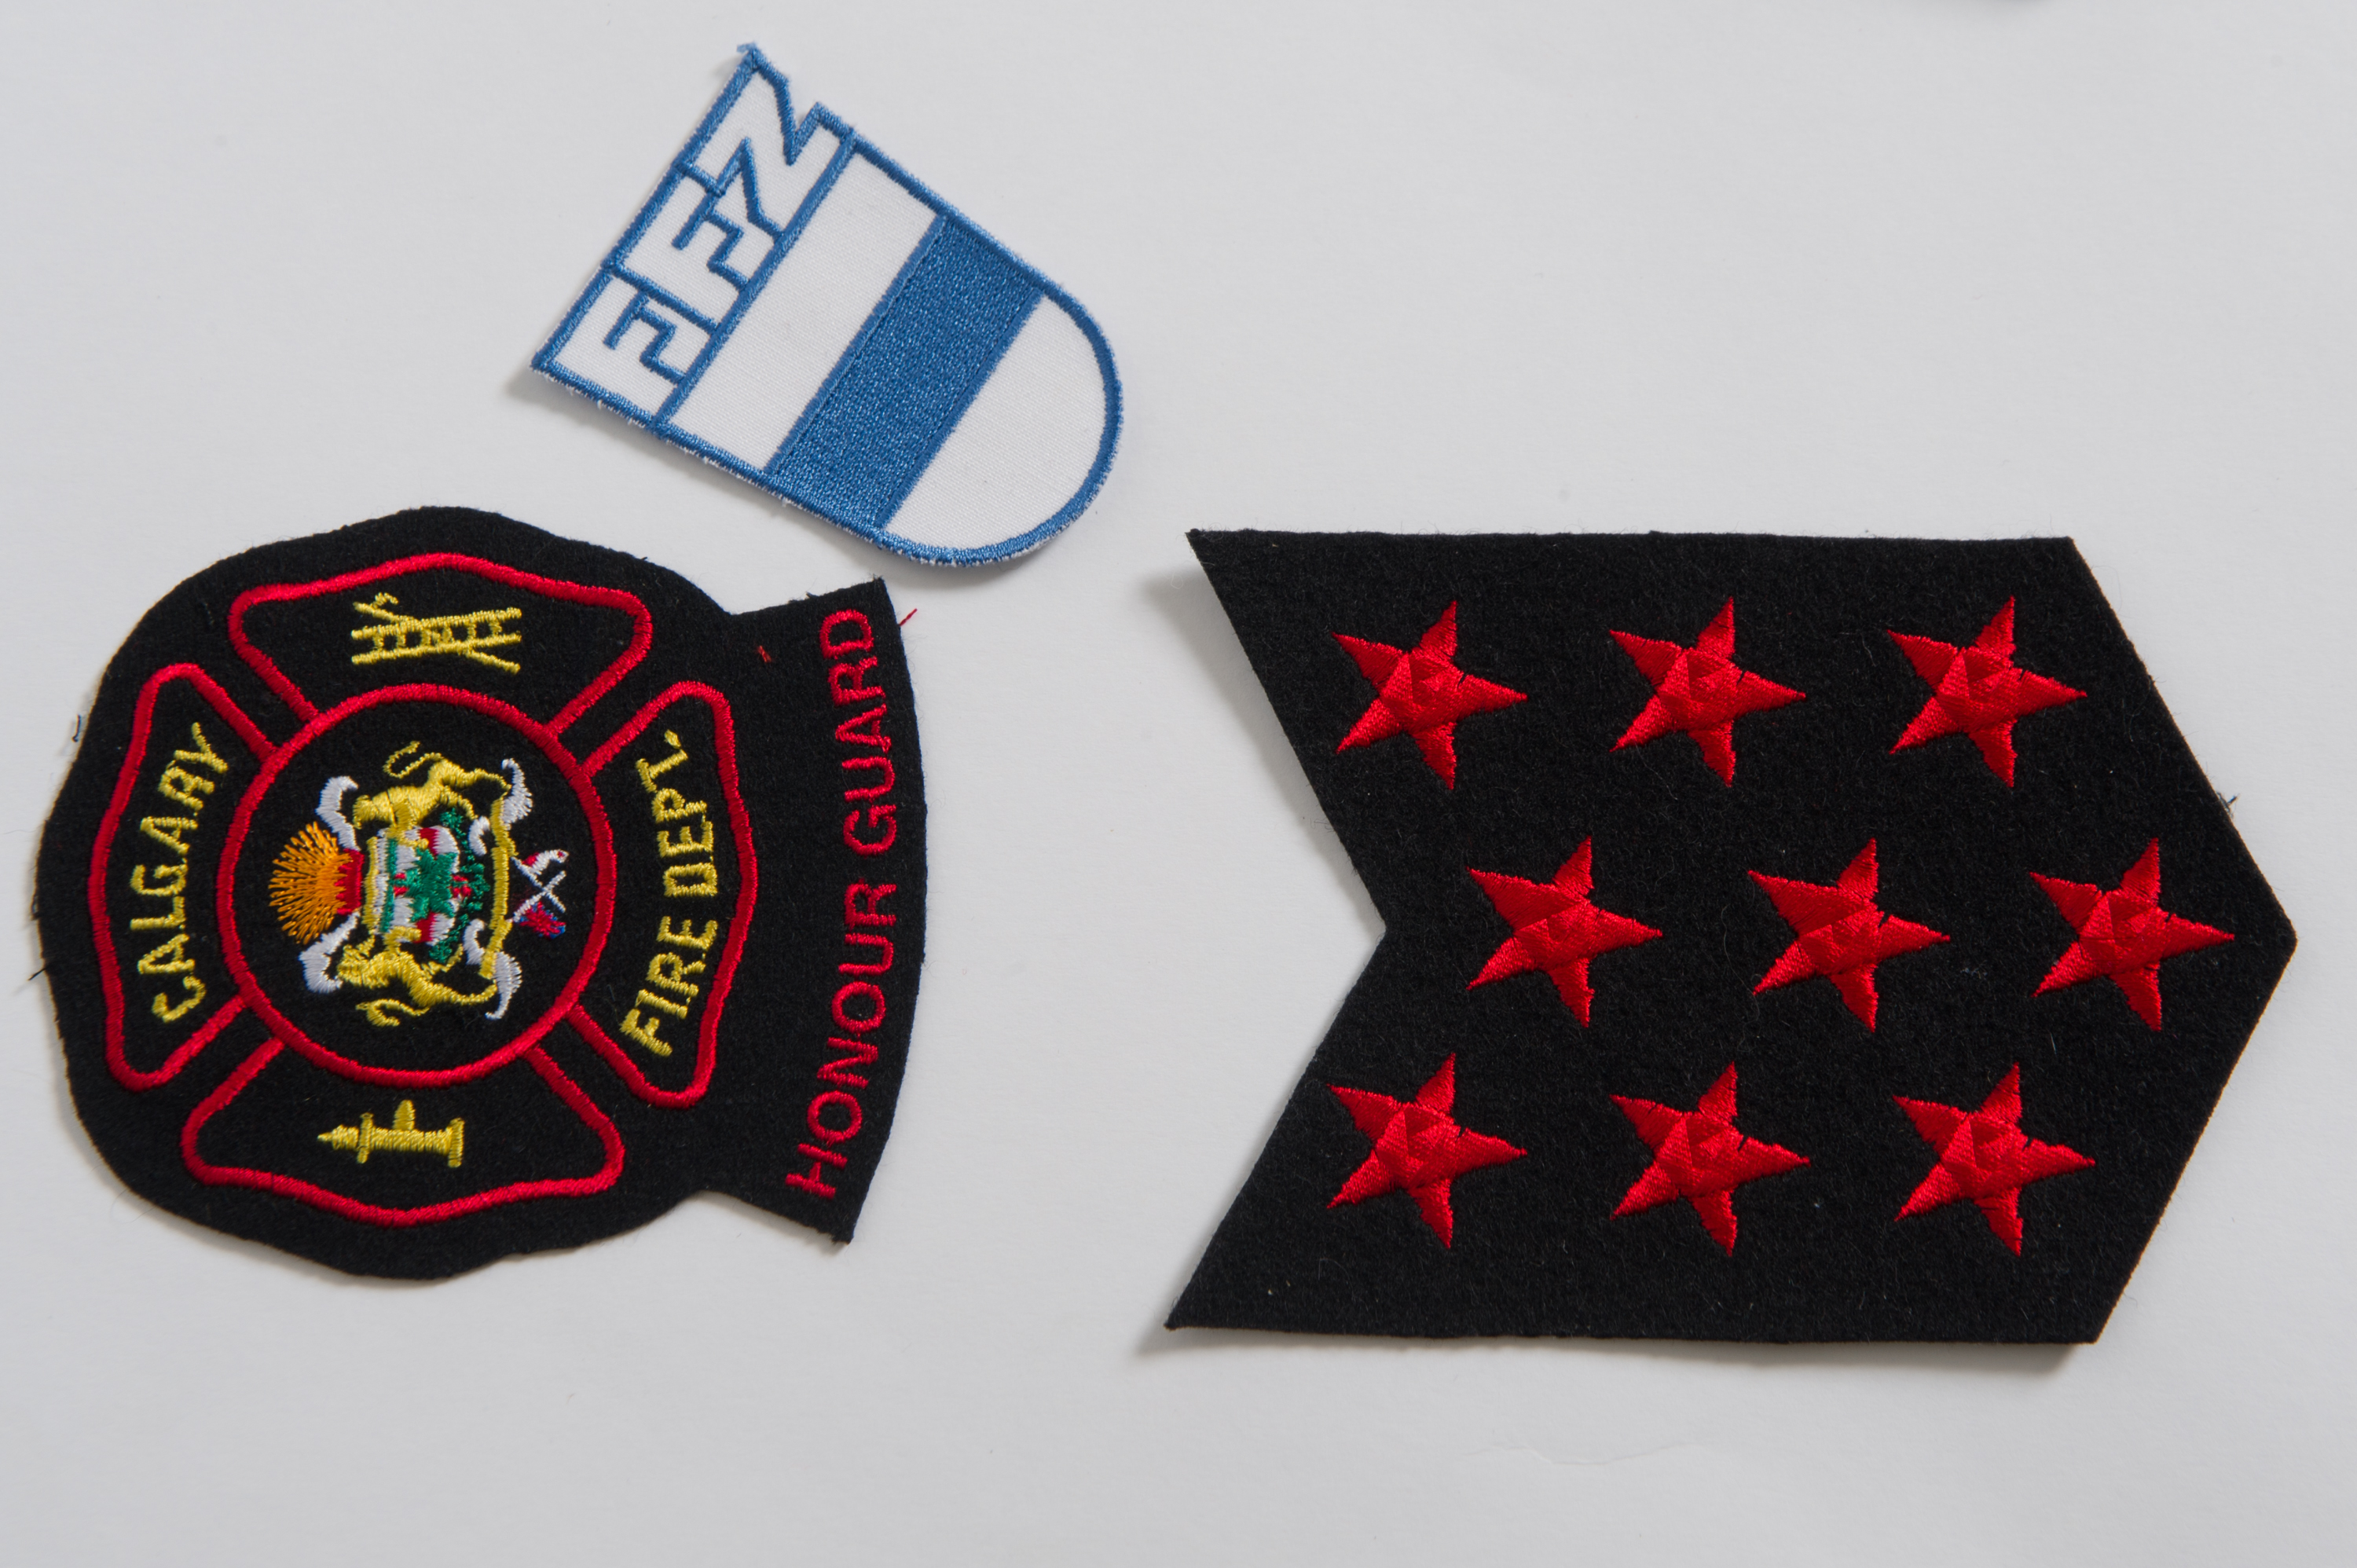 Trois insignes : l’insigne du service d’incendie de Calgary avec le logo de la ville, les neuf étoiles rouges et un insigne blanc et bleu du service d’incendie bénévole de la ville natale de Tobias Breuer (FFZ), en Suisse